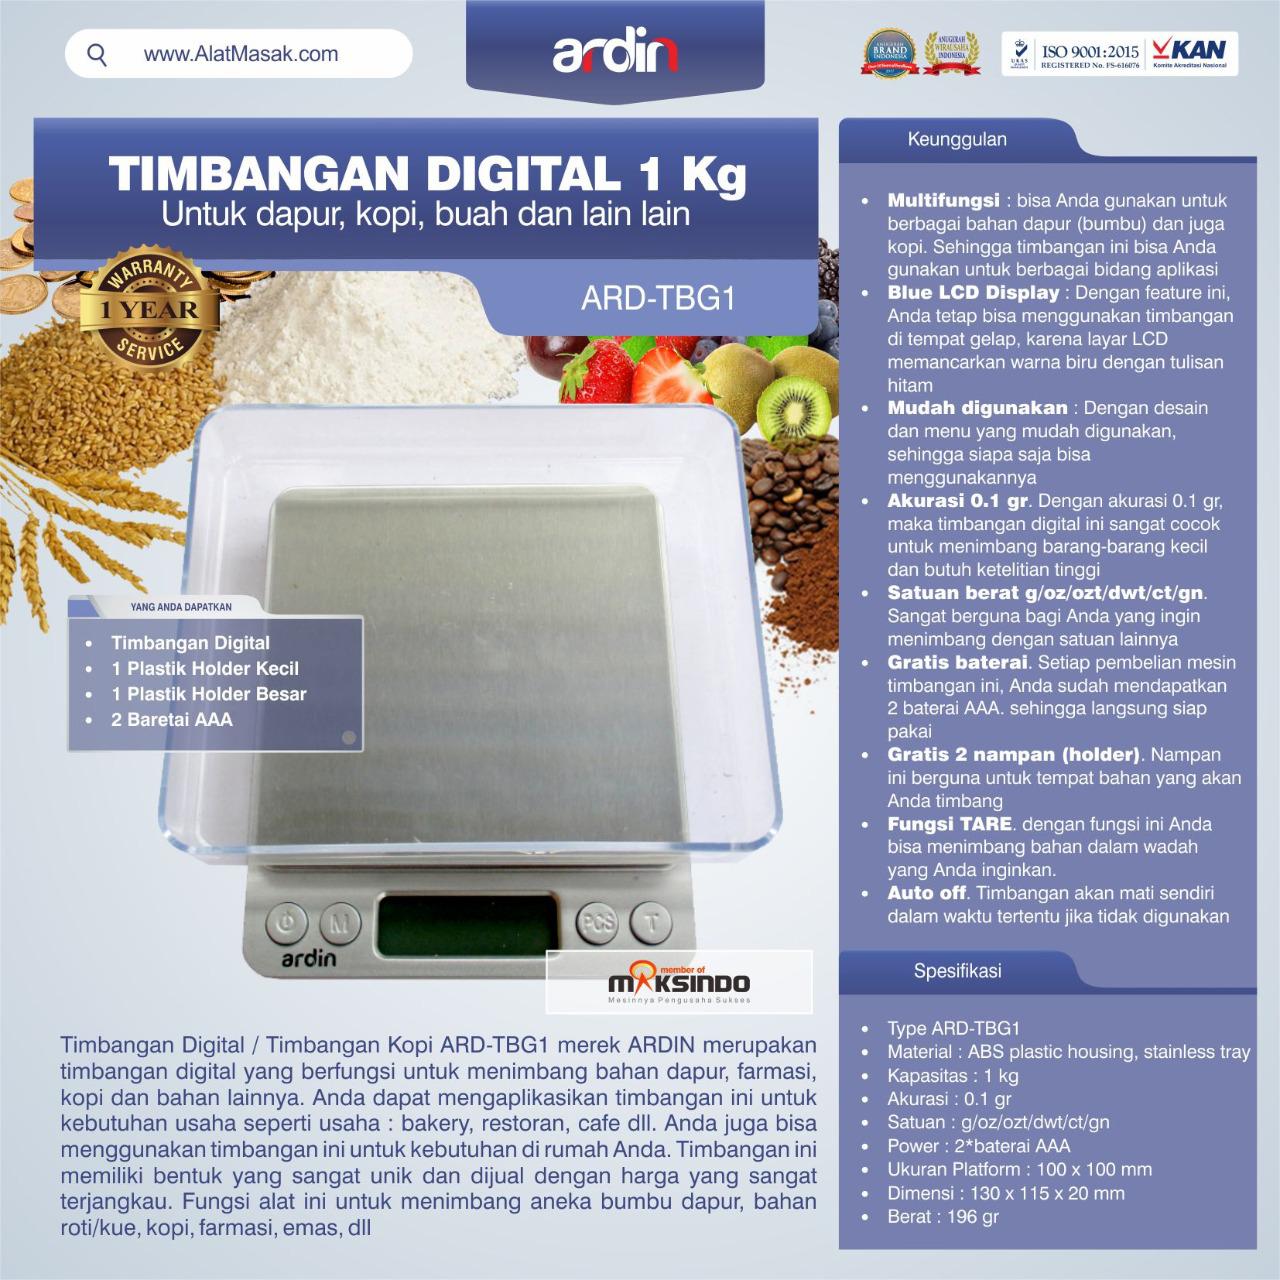 Jual Timbangan Digital Dapur 1 kg / Timbangan Kopi ARD-TBG1 di Bogor